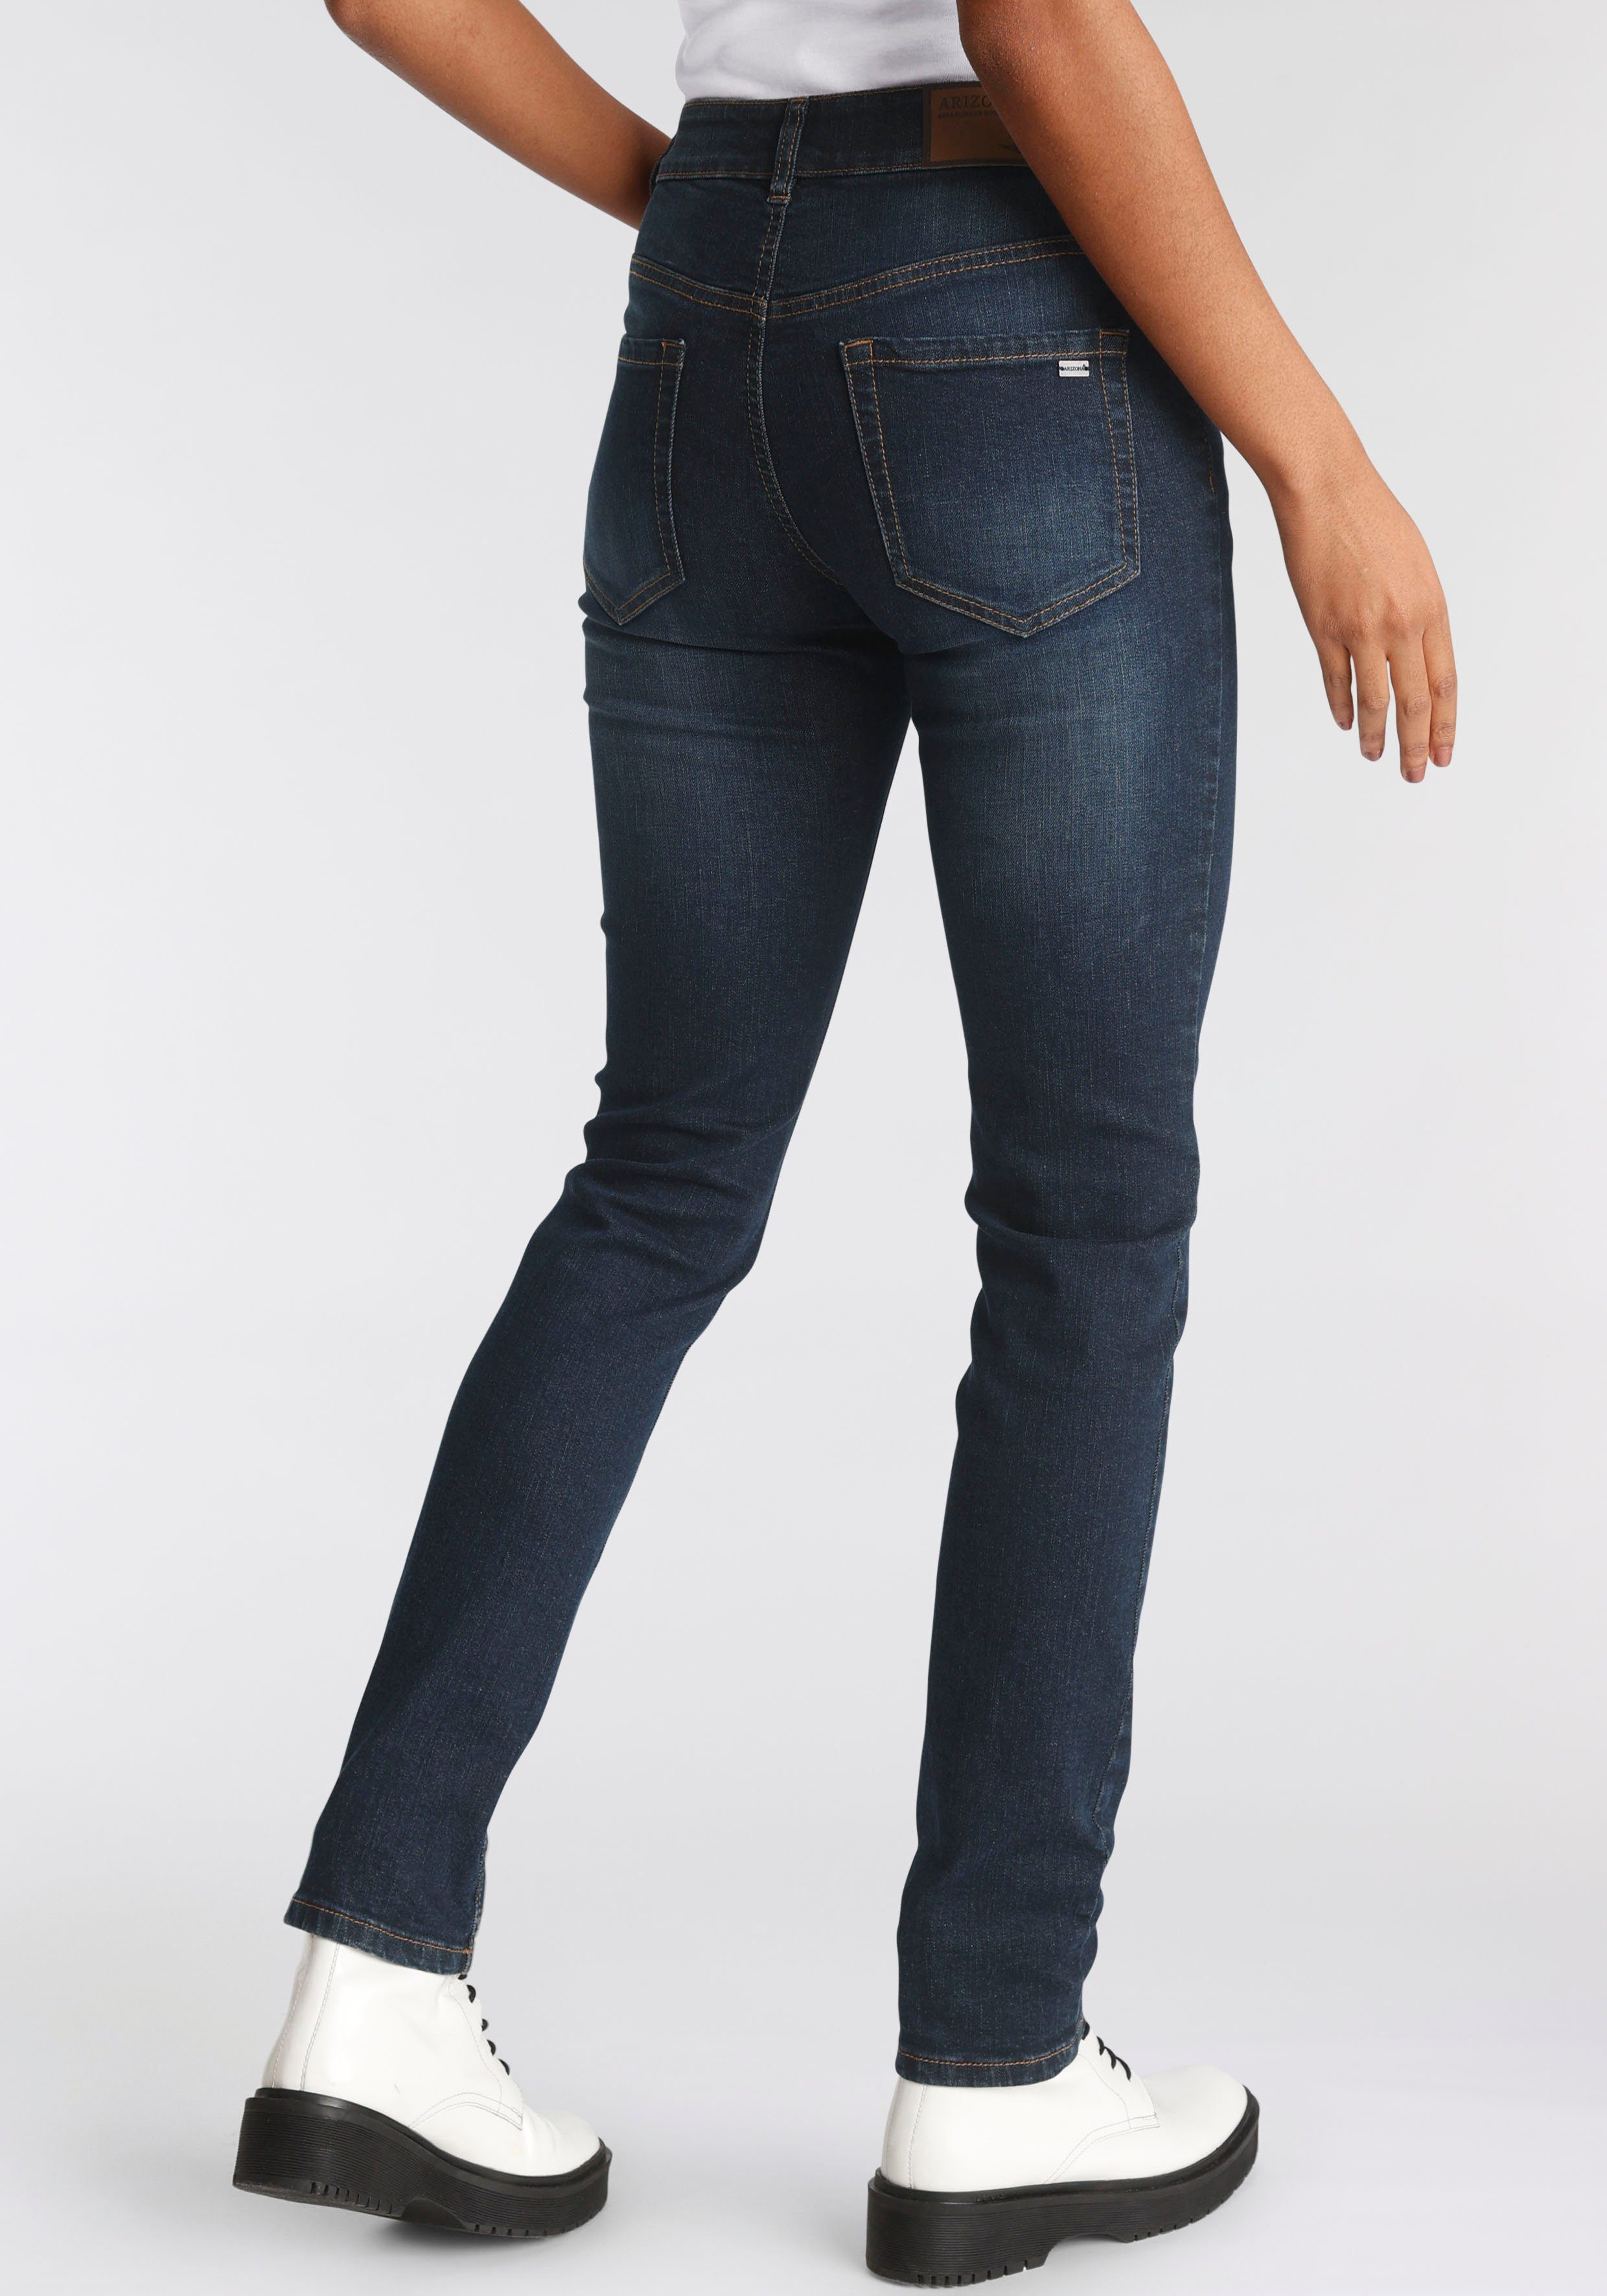 Waist mit Arizona seitlichem Bund Slim-fit-Jeans darkblue-used High Gummizugeinsatz